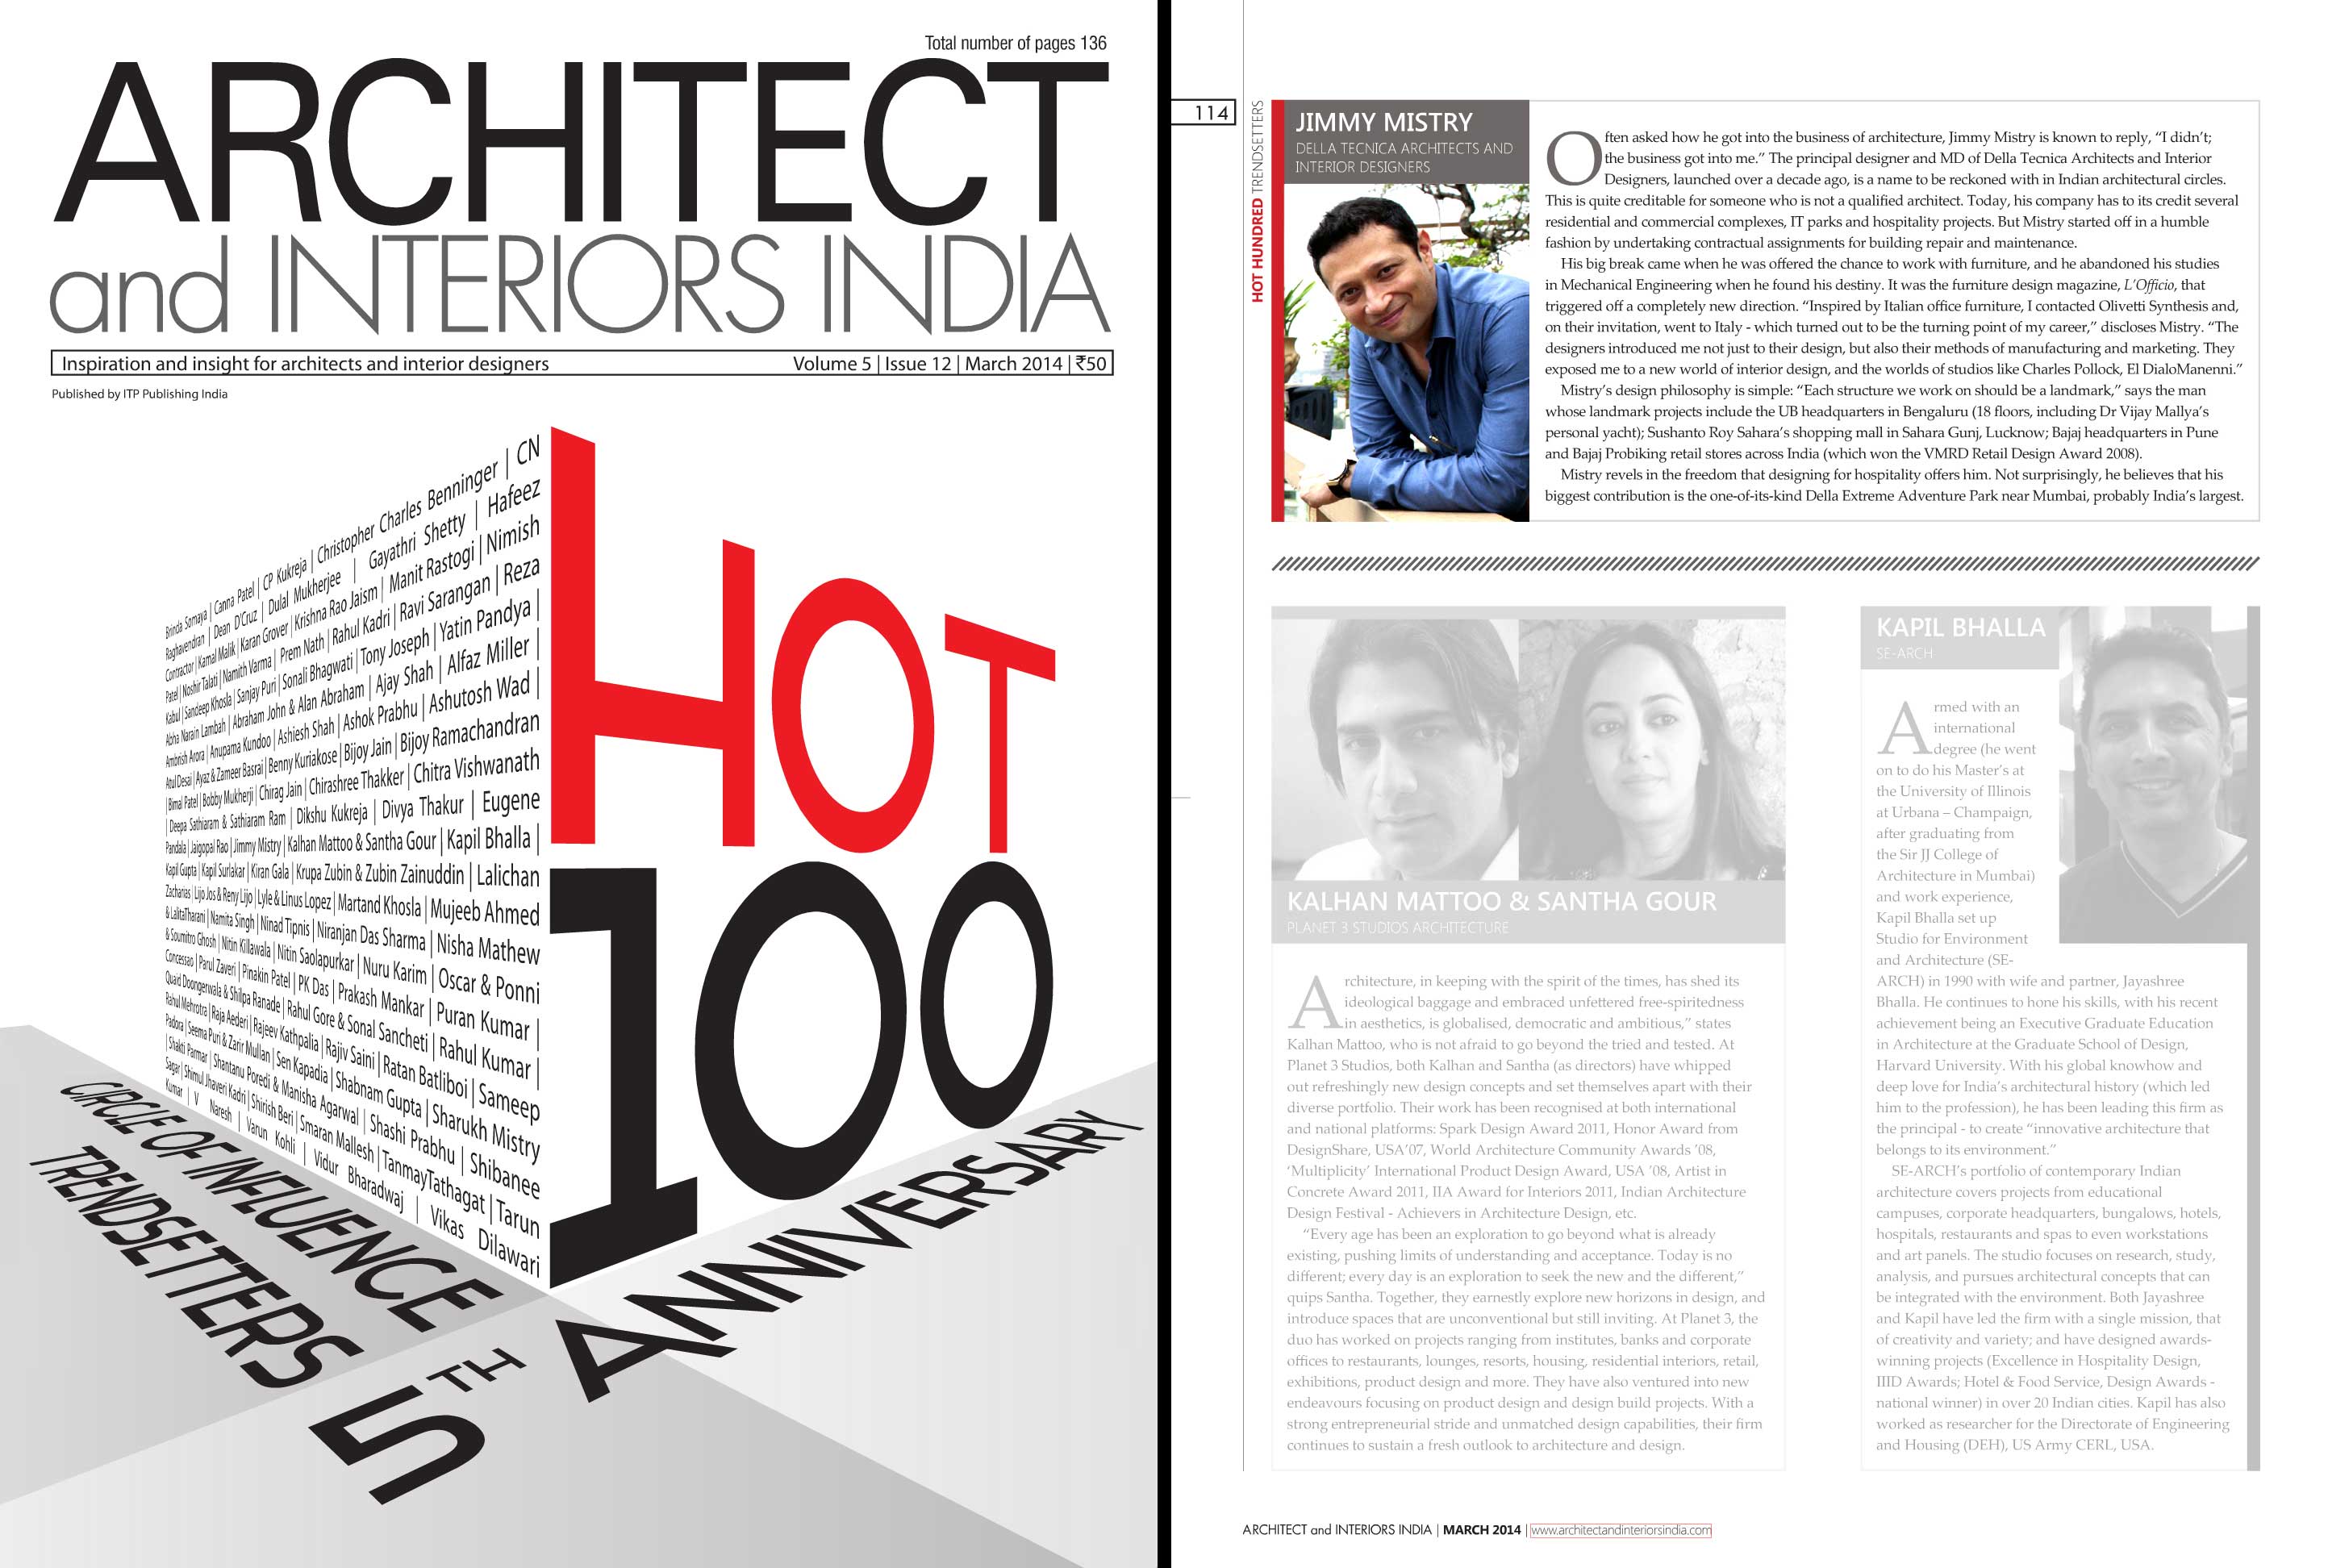 Della News on Architect and Interiors India Magazine